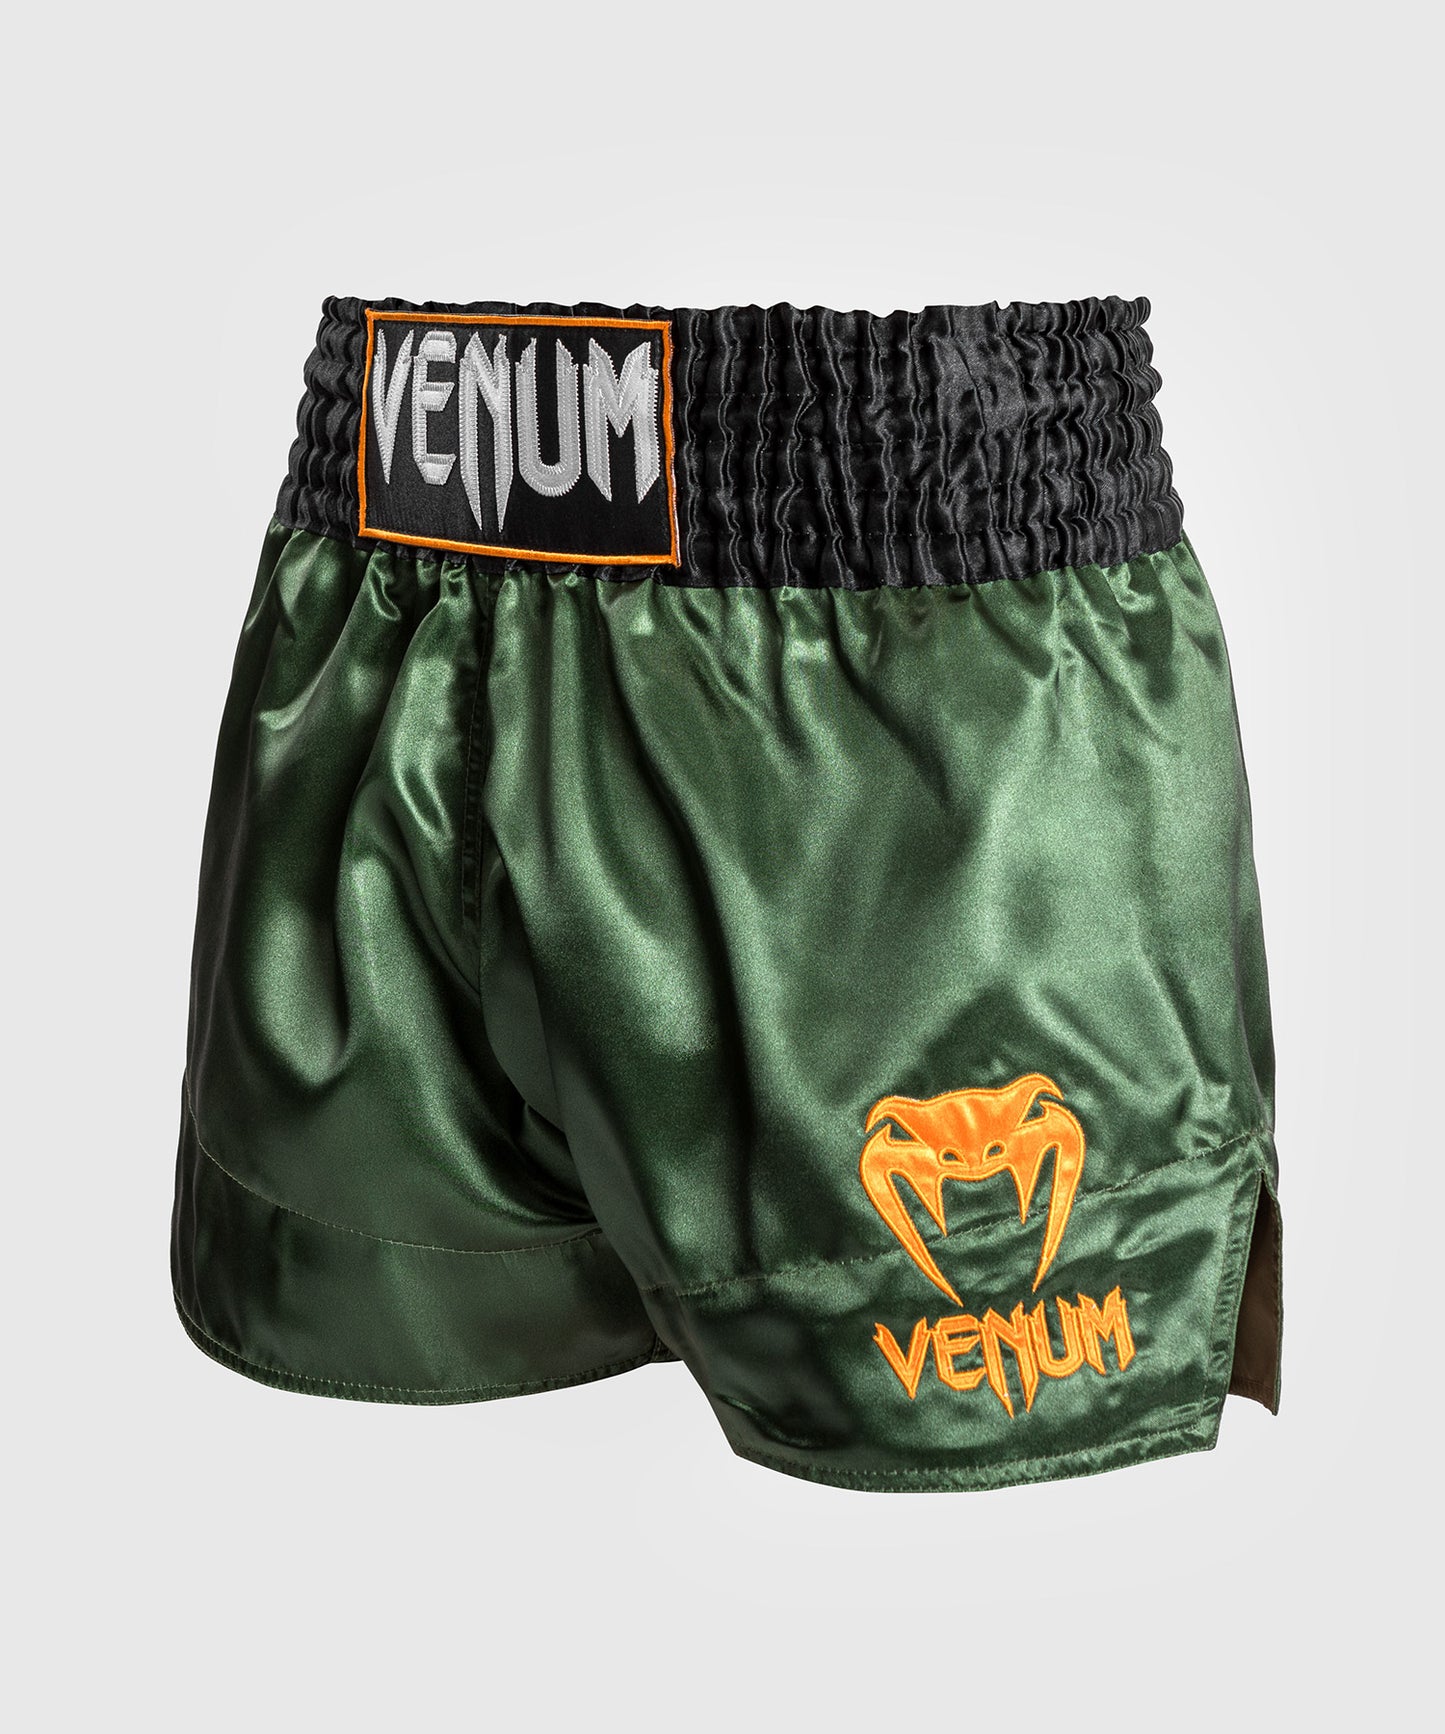 Venum Classic Muay Thai broekje - Groen/Goud/Zwart